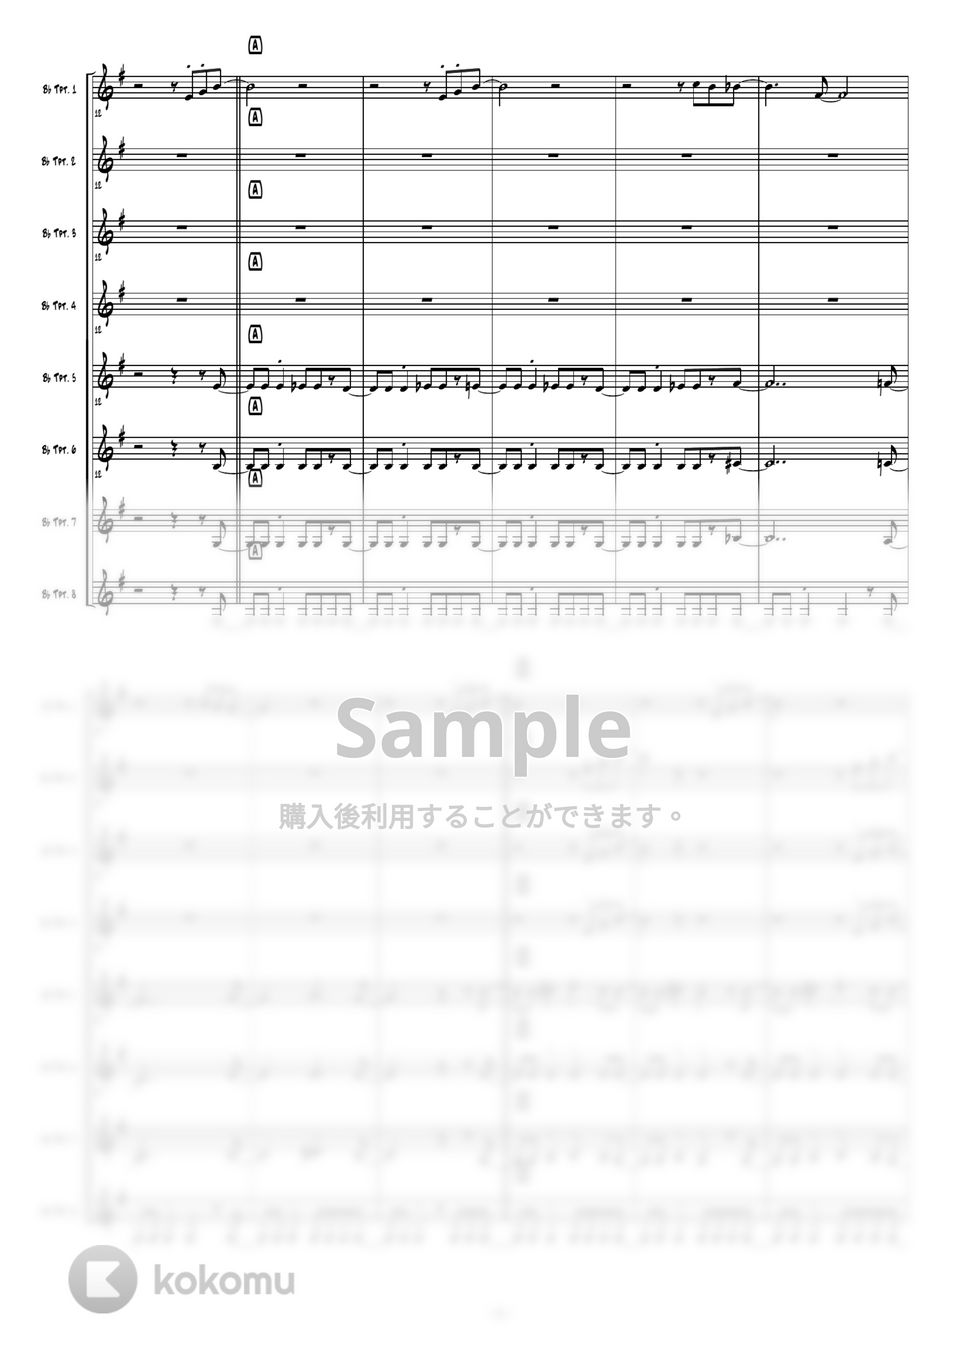 ルパン三世 - セクシー・アドベンチャー (トランペット8重奏) by 高田将利